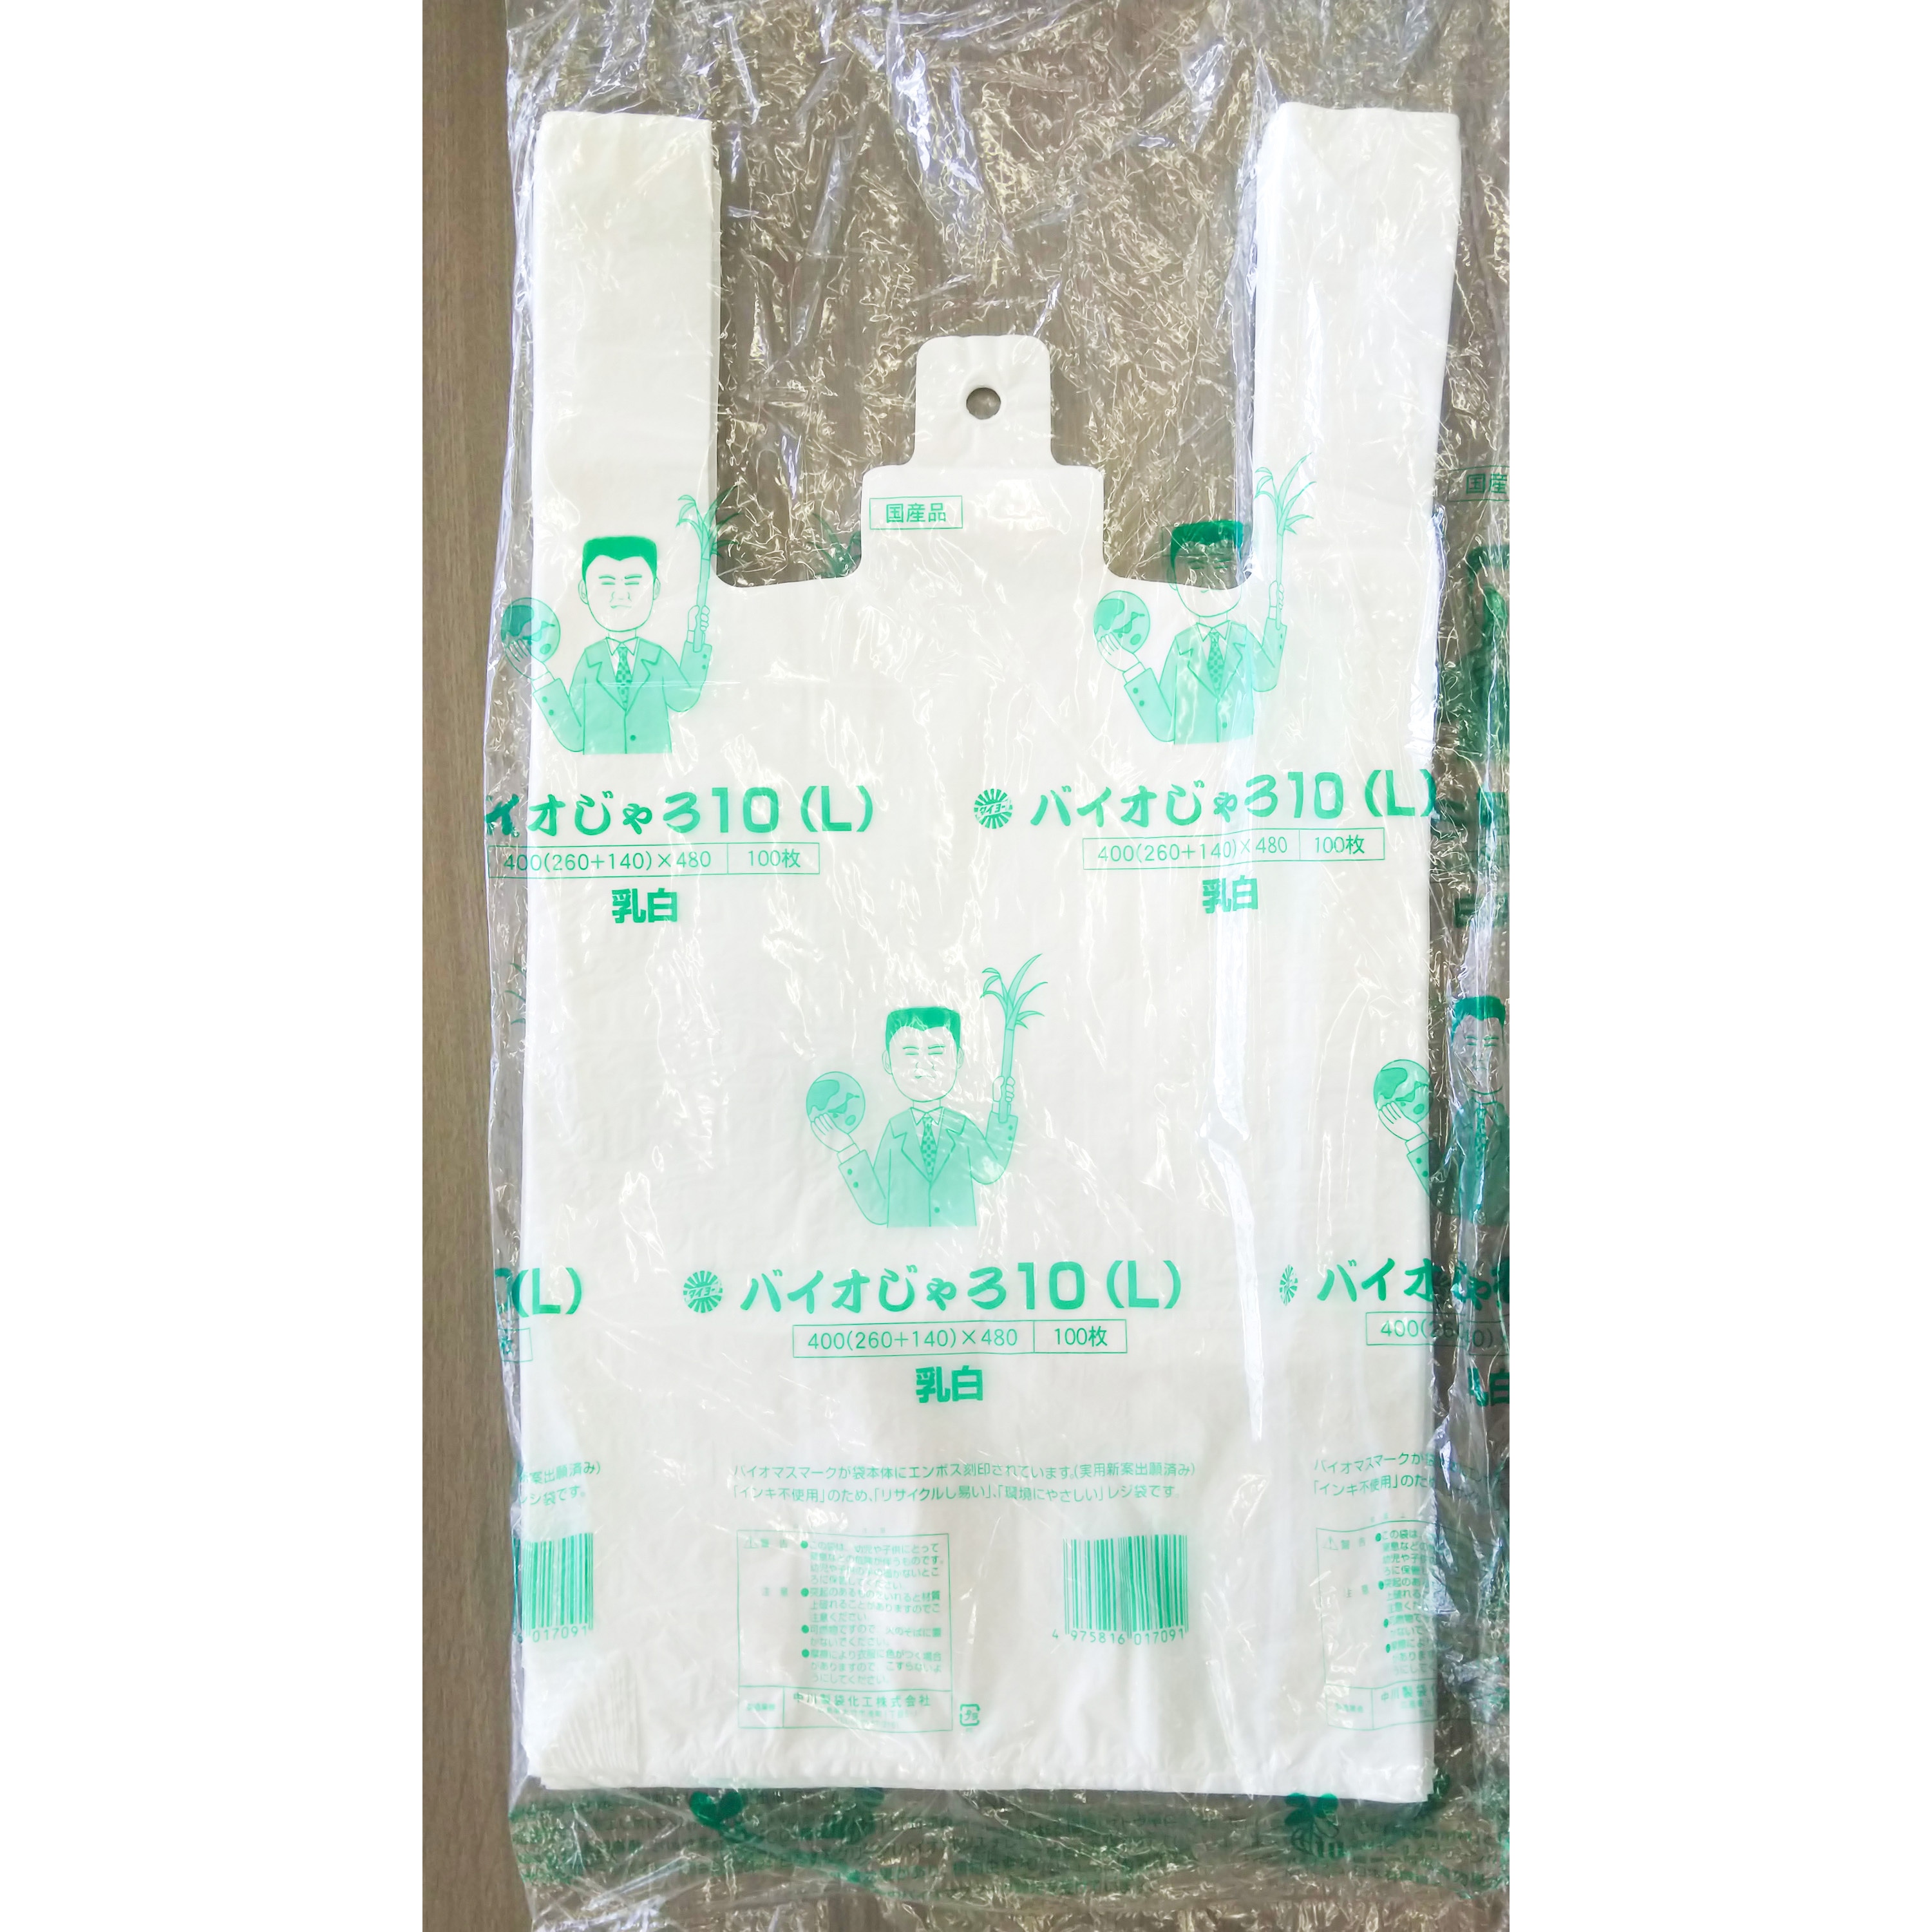 レジ袋 タイヨーマーク バイオマス25% (LX)1,000枚 乳白 バイオNNパック25 - 4